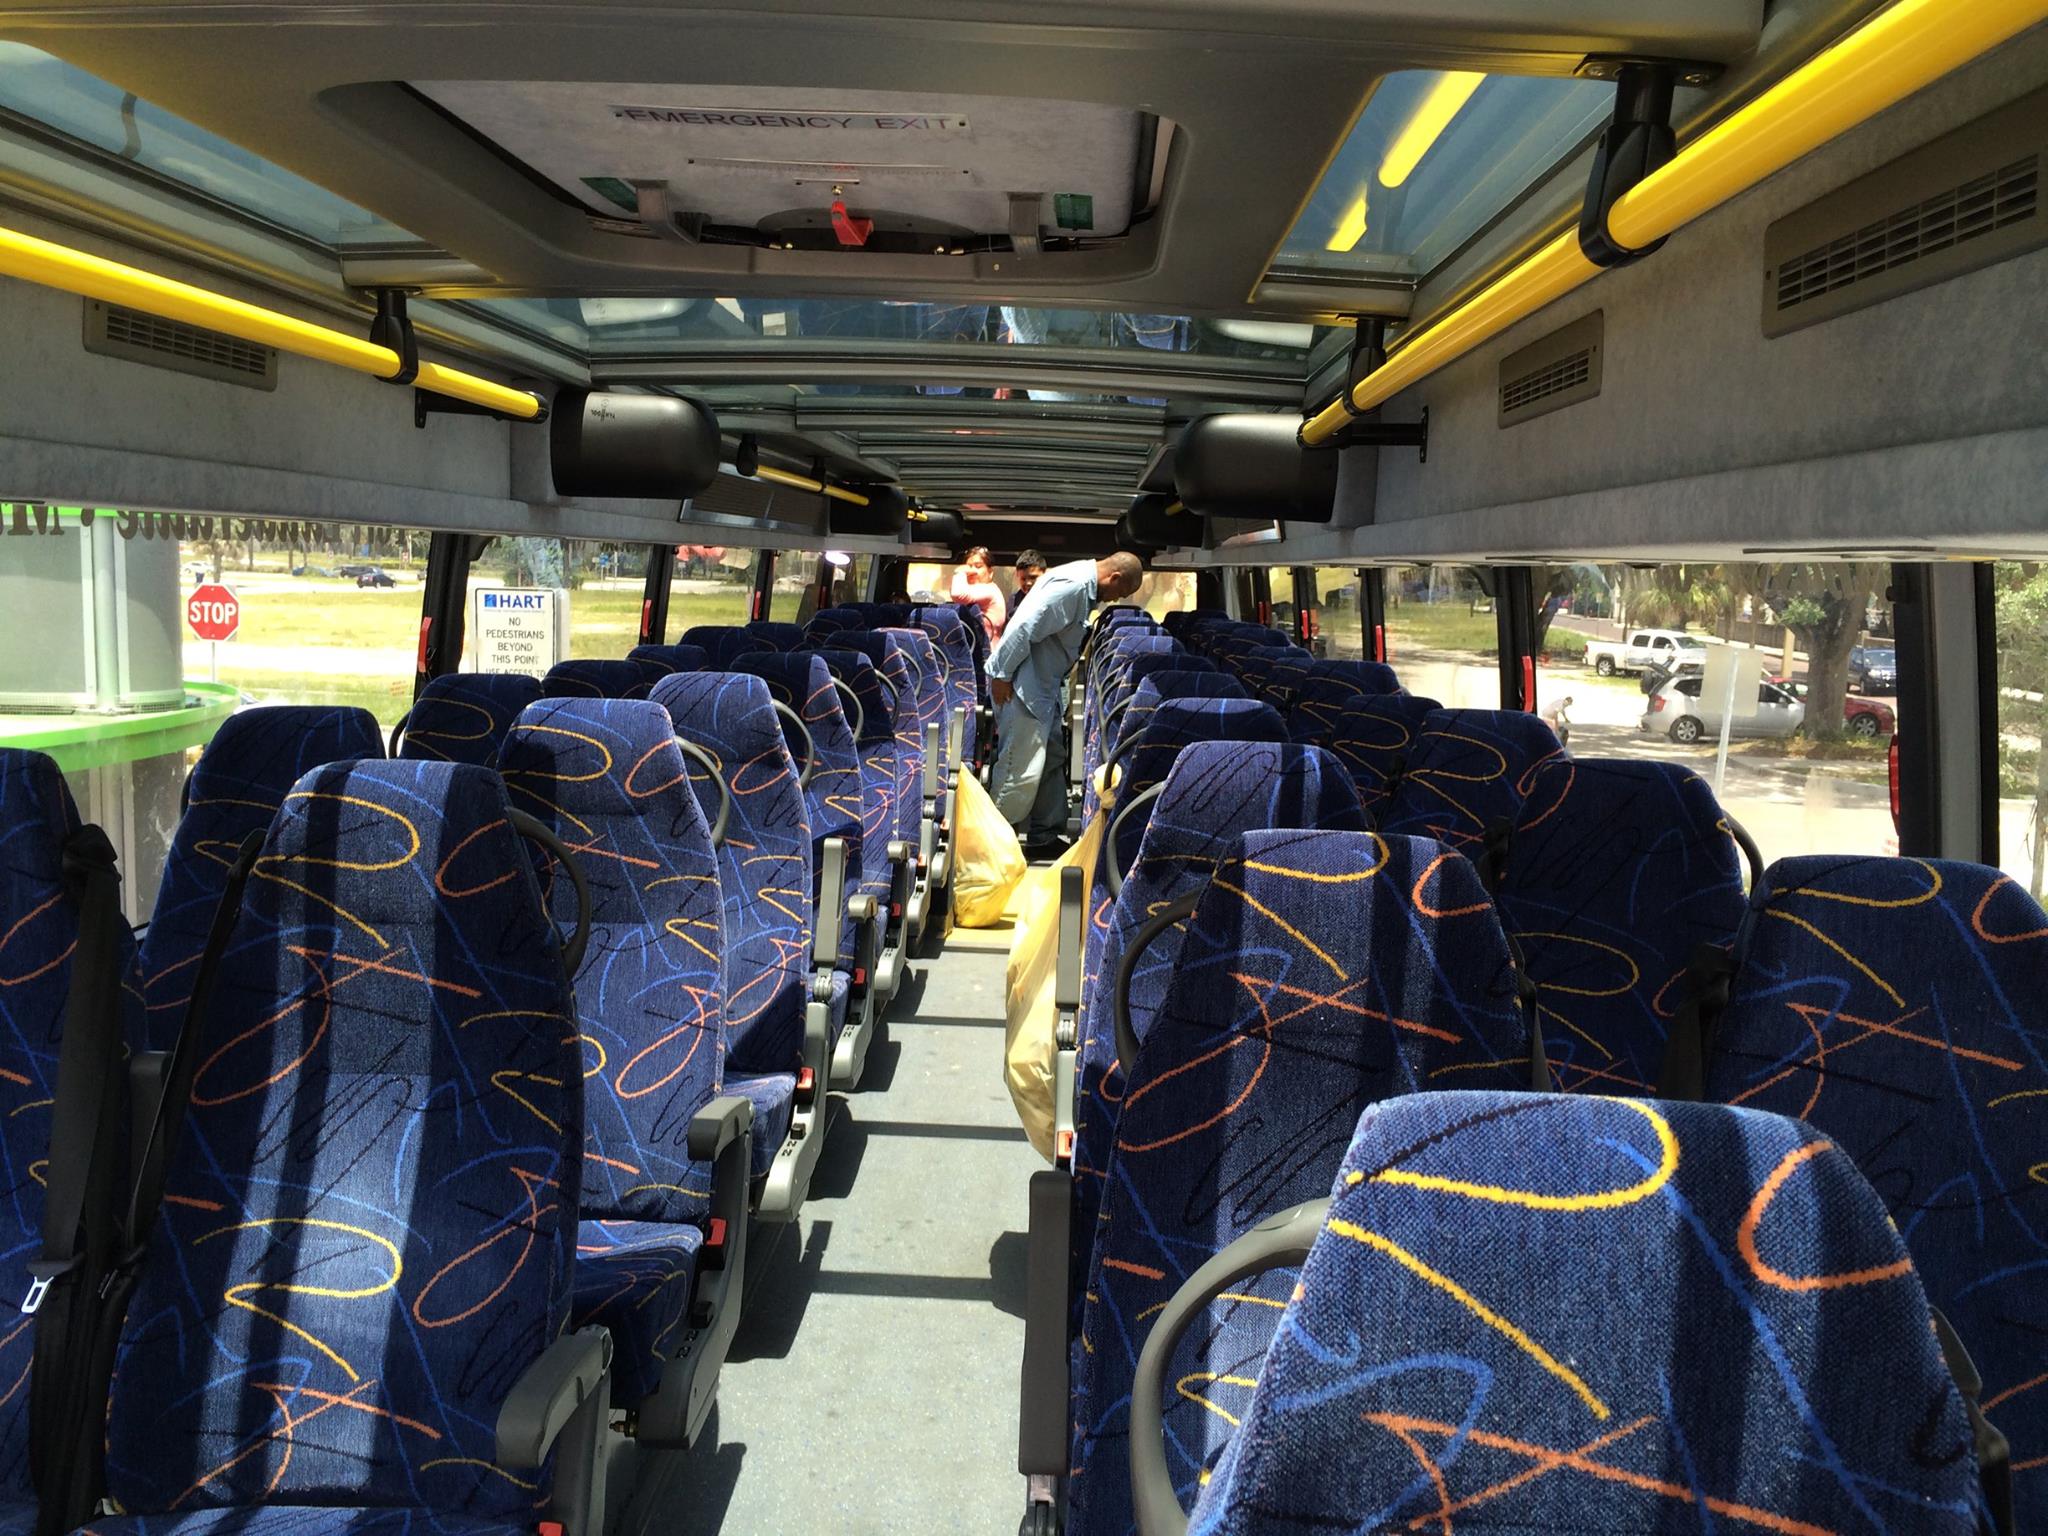 Đây là chiếc xe buýt hai tầng với hơn 80 chỗ ngồi. Tầng 2 luôn chan hoà nắng bởi trên nóc là tấm vật liệu trong suốt